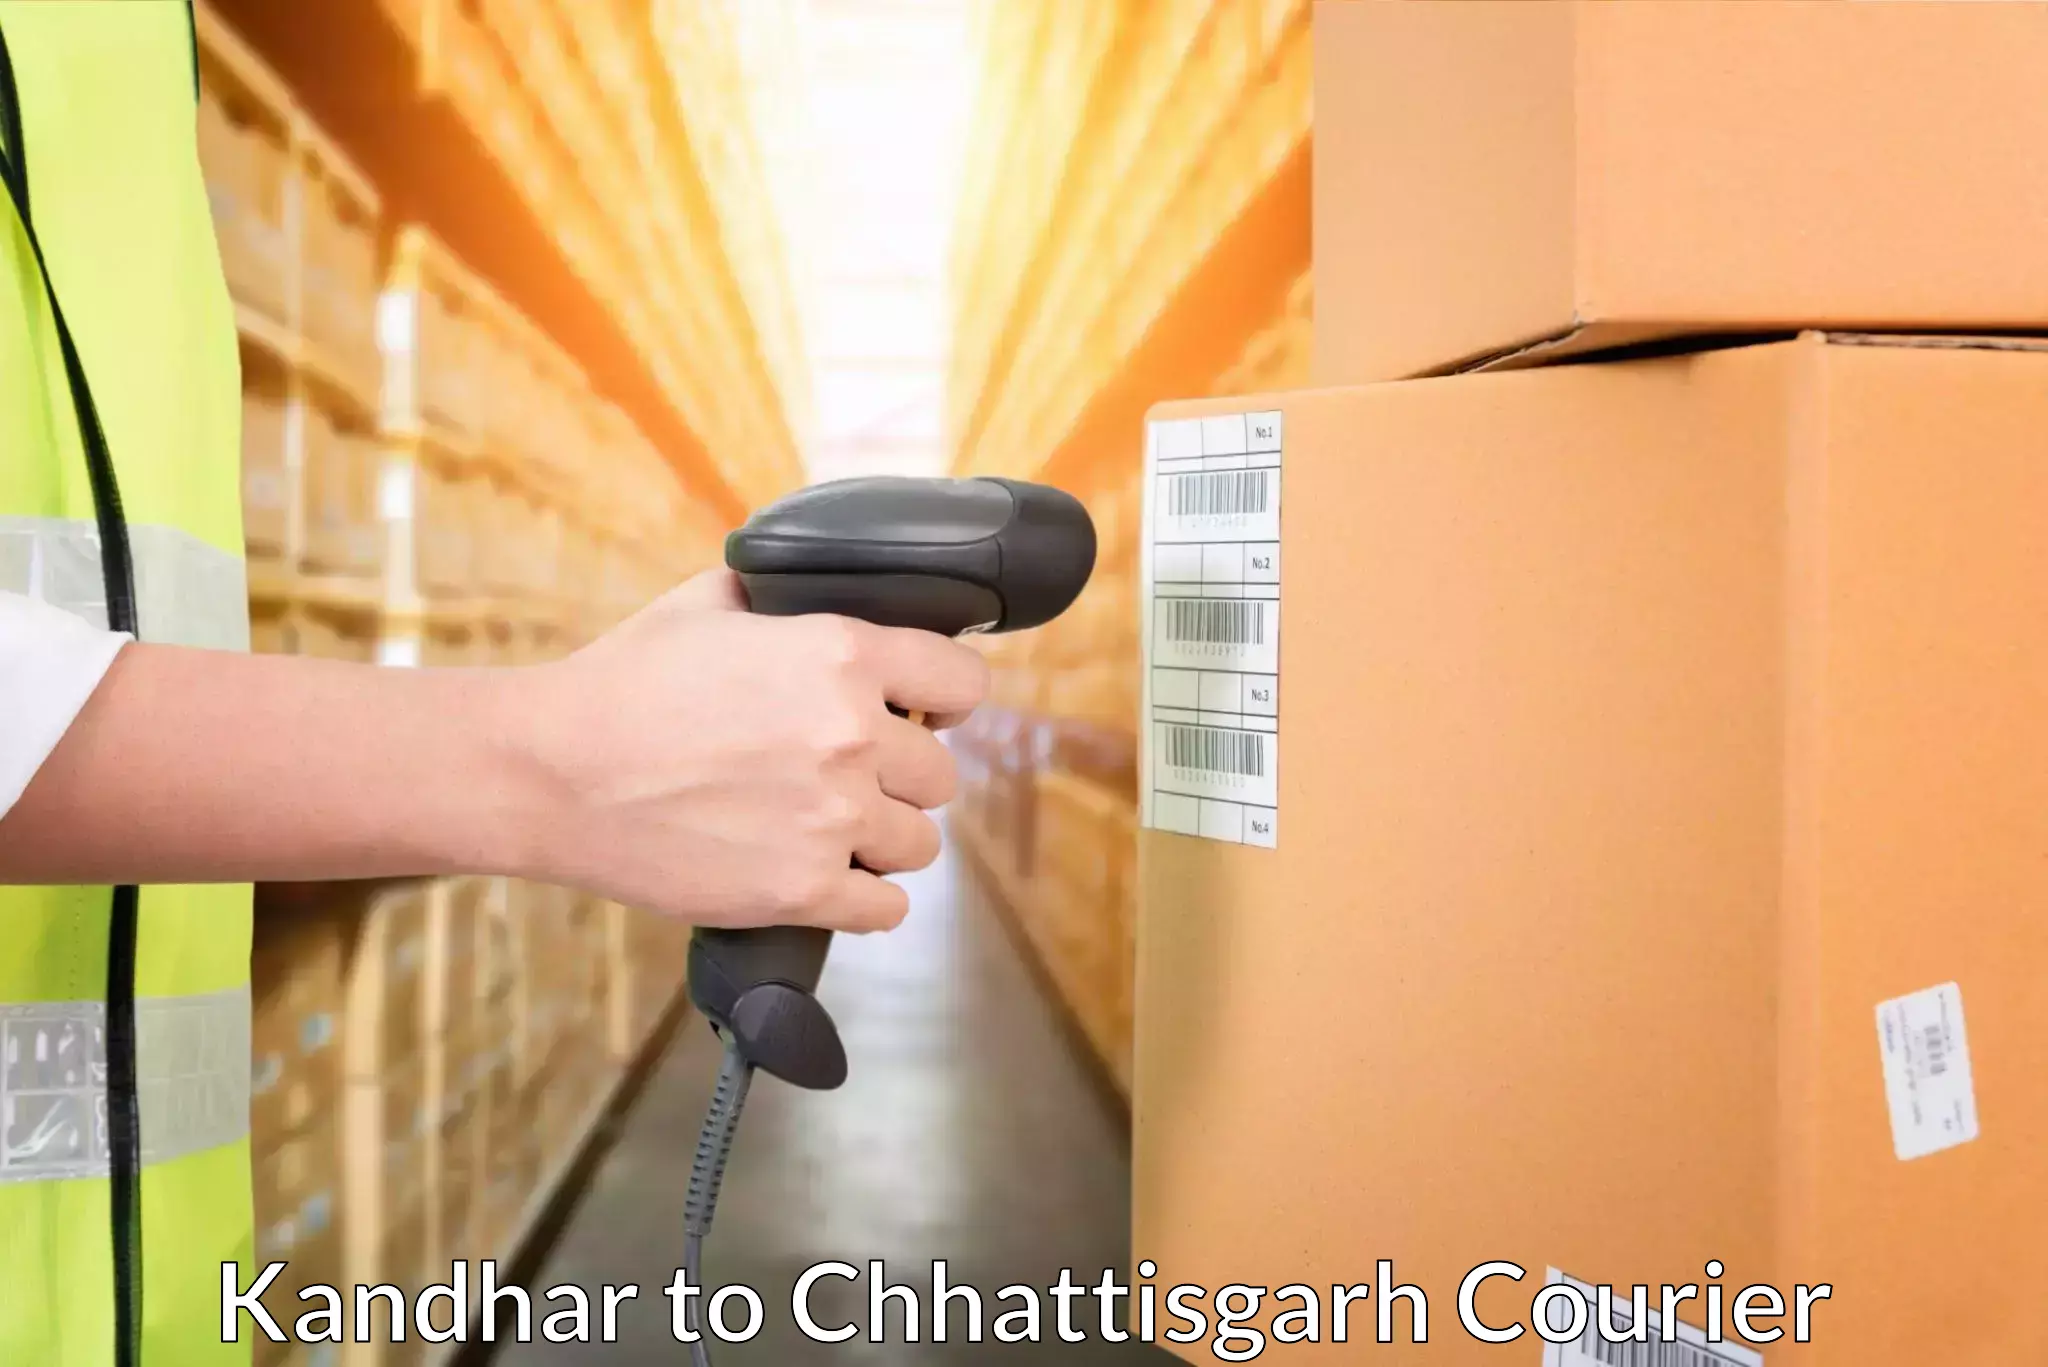 Efficient parcel service Kandhar to Pakhanjur